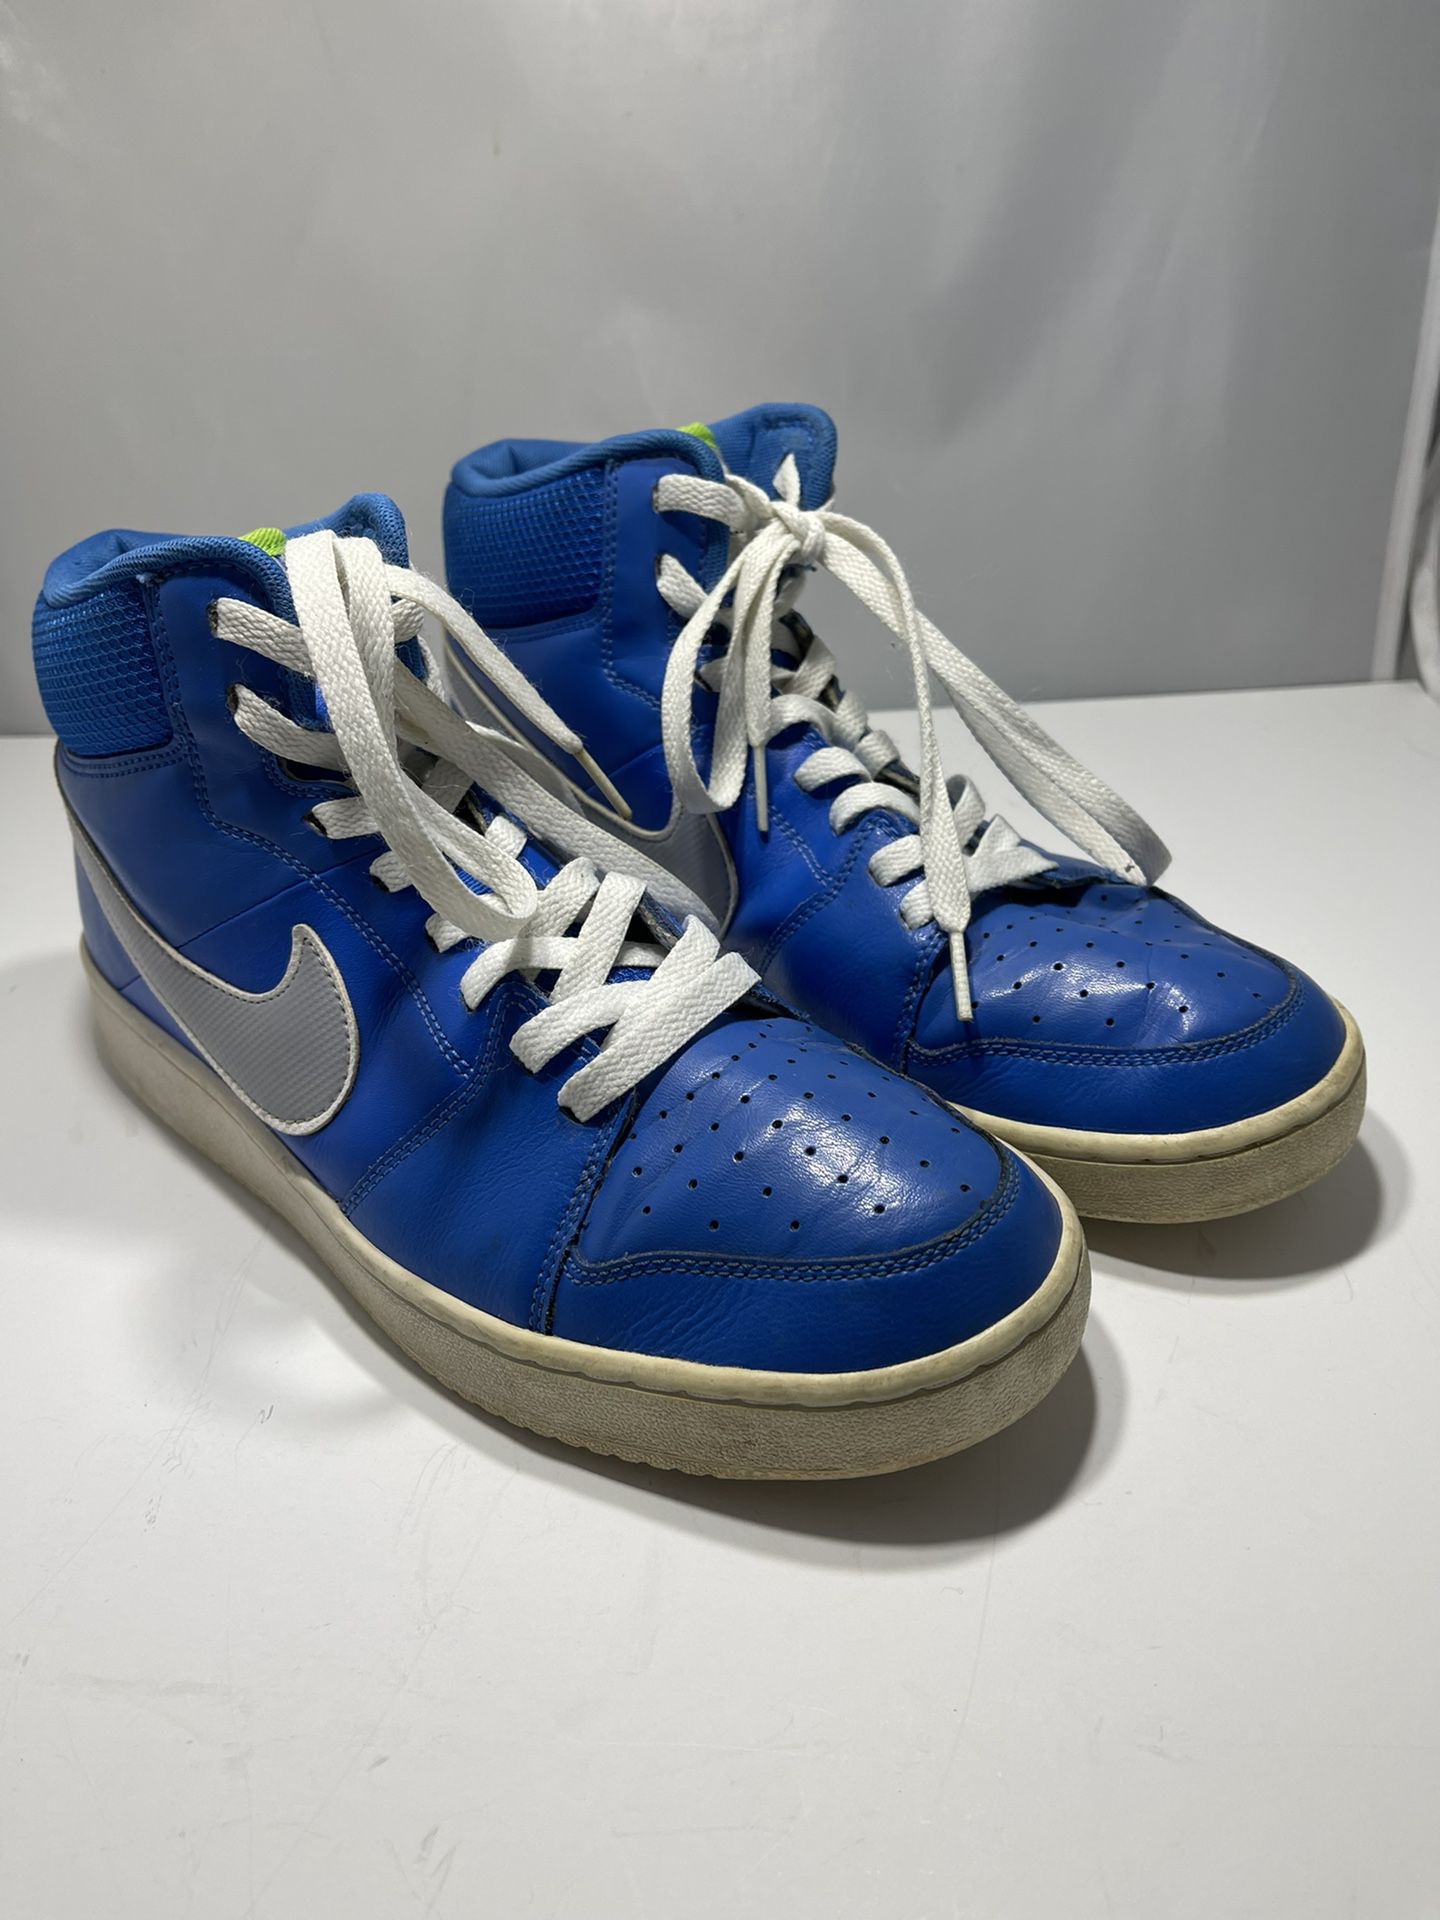 Alegre propietario Janice Nike Backboard II Mid Men's Signal Blue Green White 487656-400 Sneaker Size  10.5 for Sale in Lebanon, PA - OfferUp